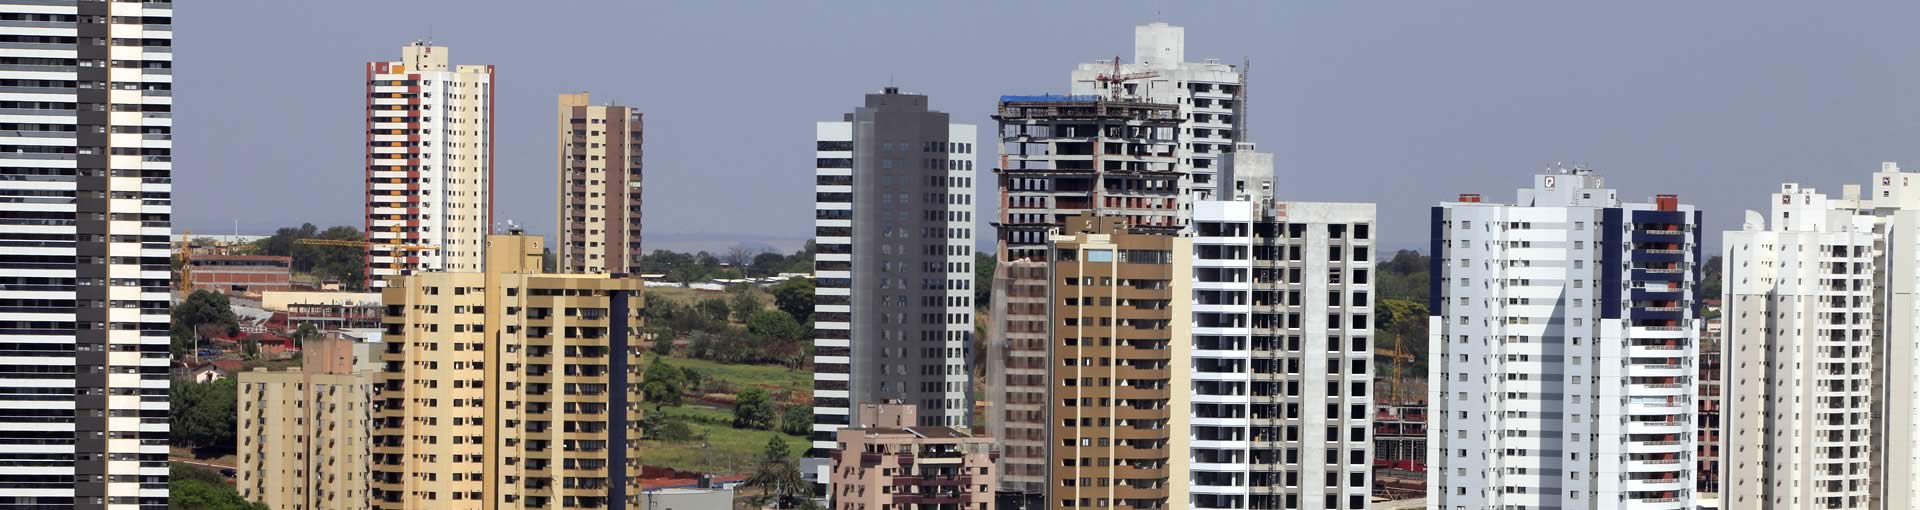 Construções em Londrina - Estruturas metálicas